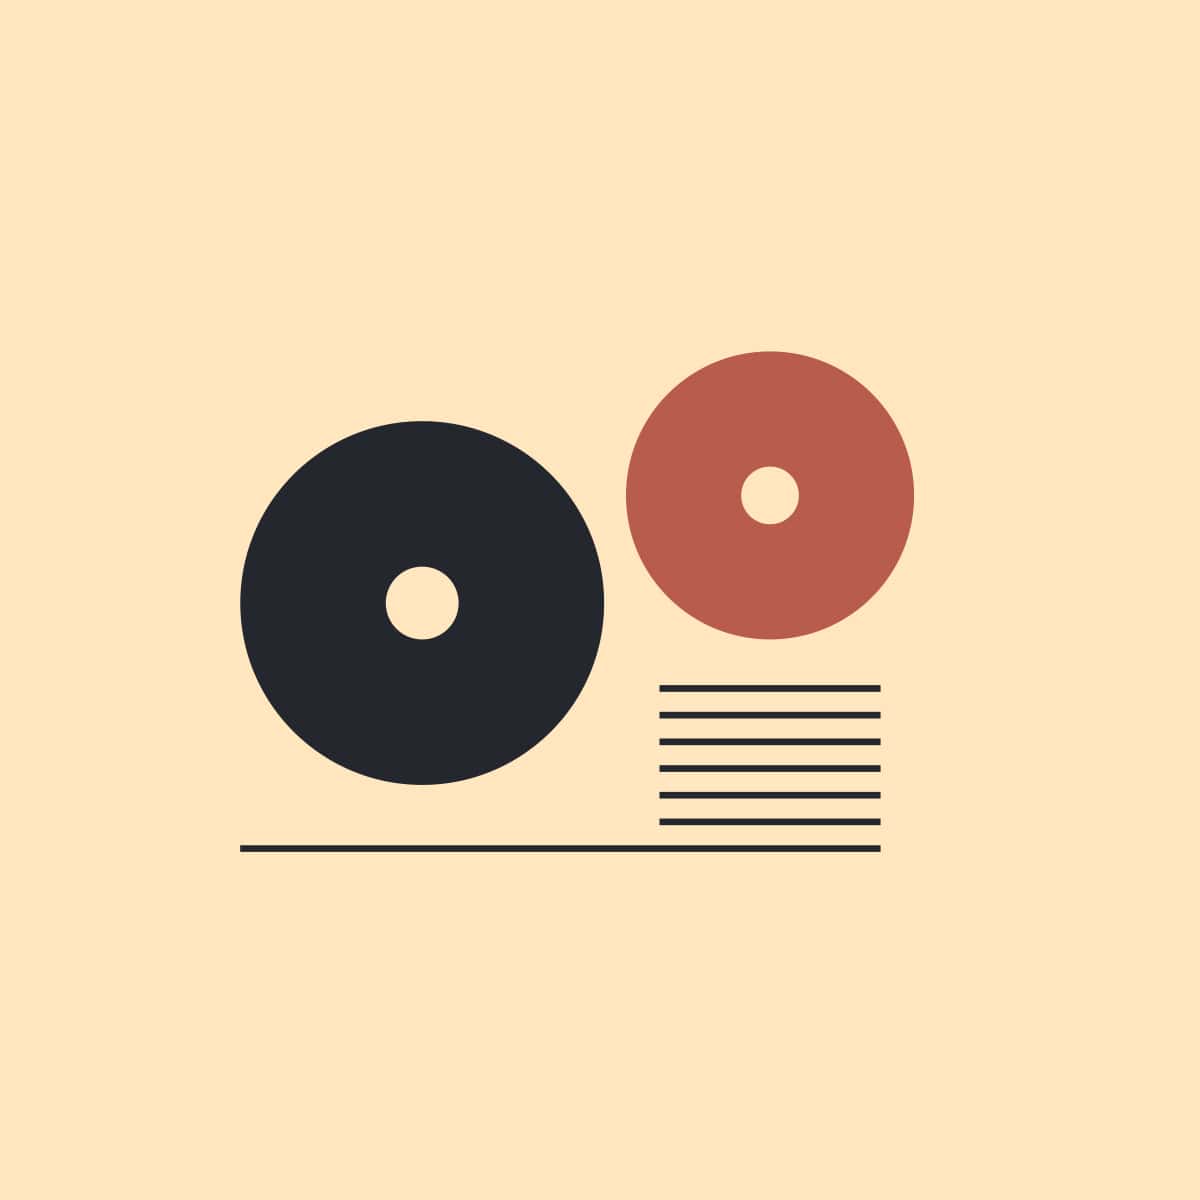 film service icon design